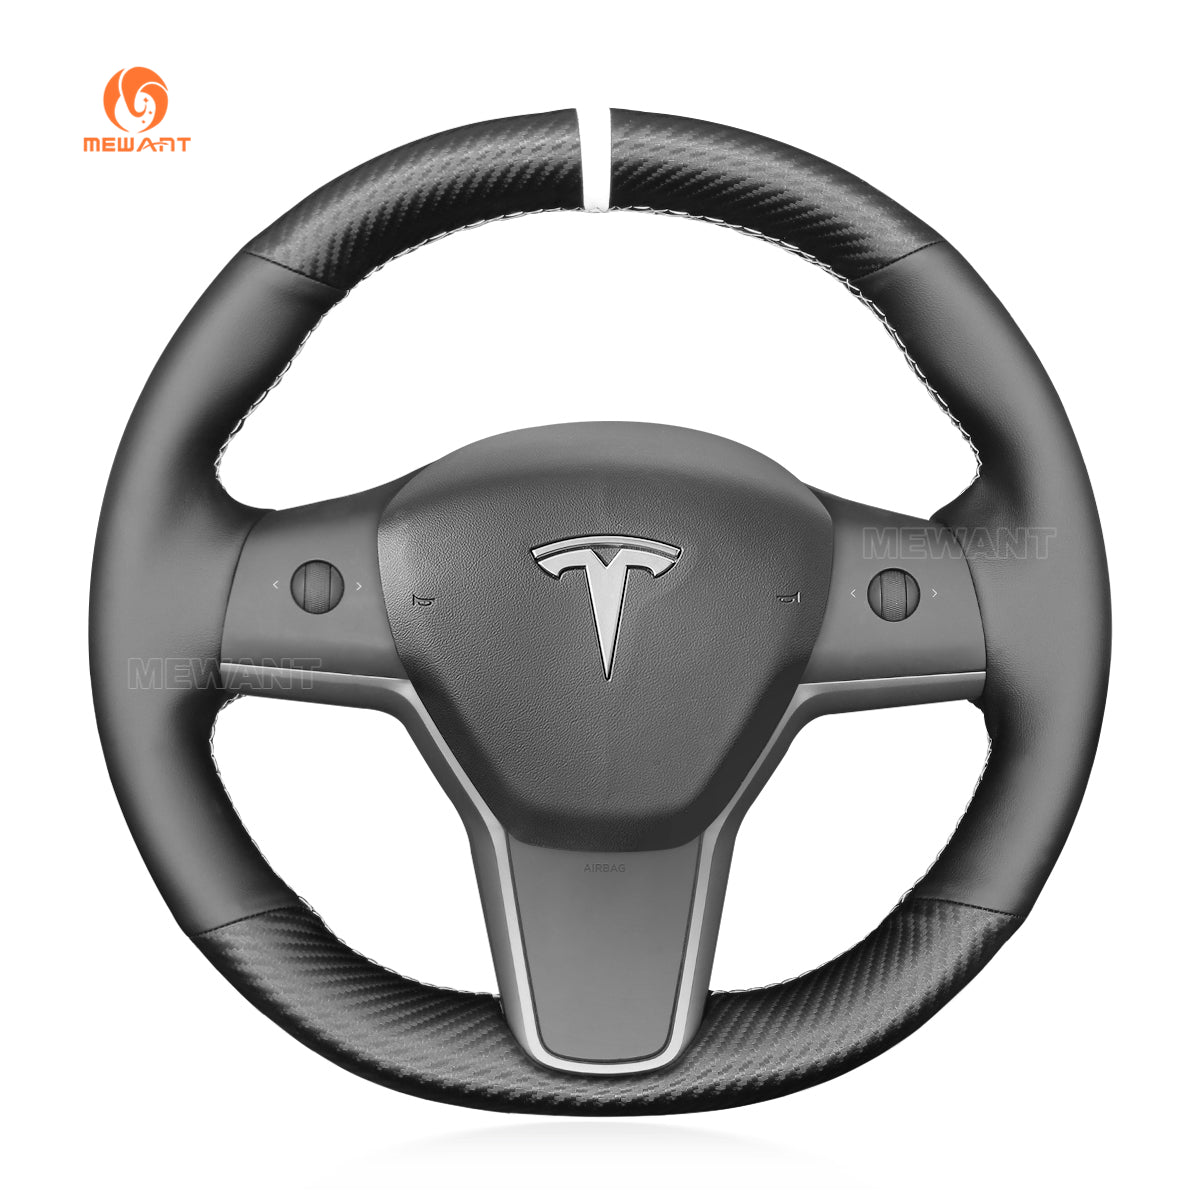 Tesla 3 Alcantara wrap  Custom steering wheel cover, Wheel cover, Steering  wheel cover